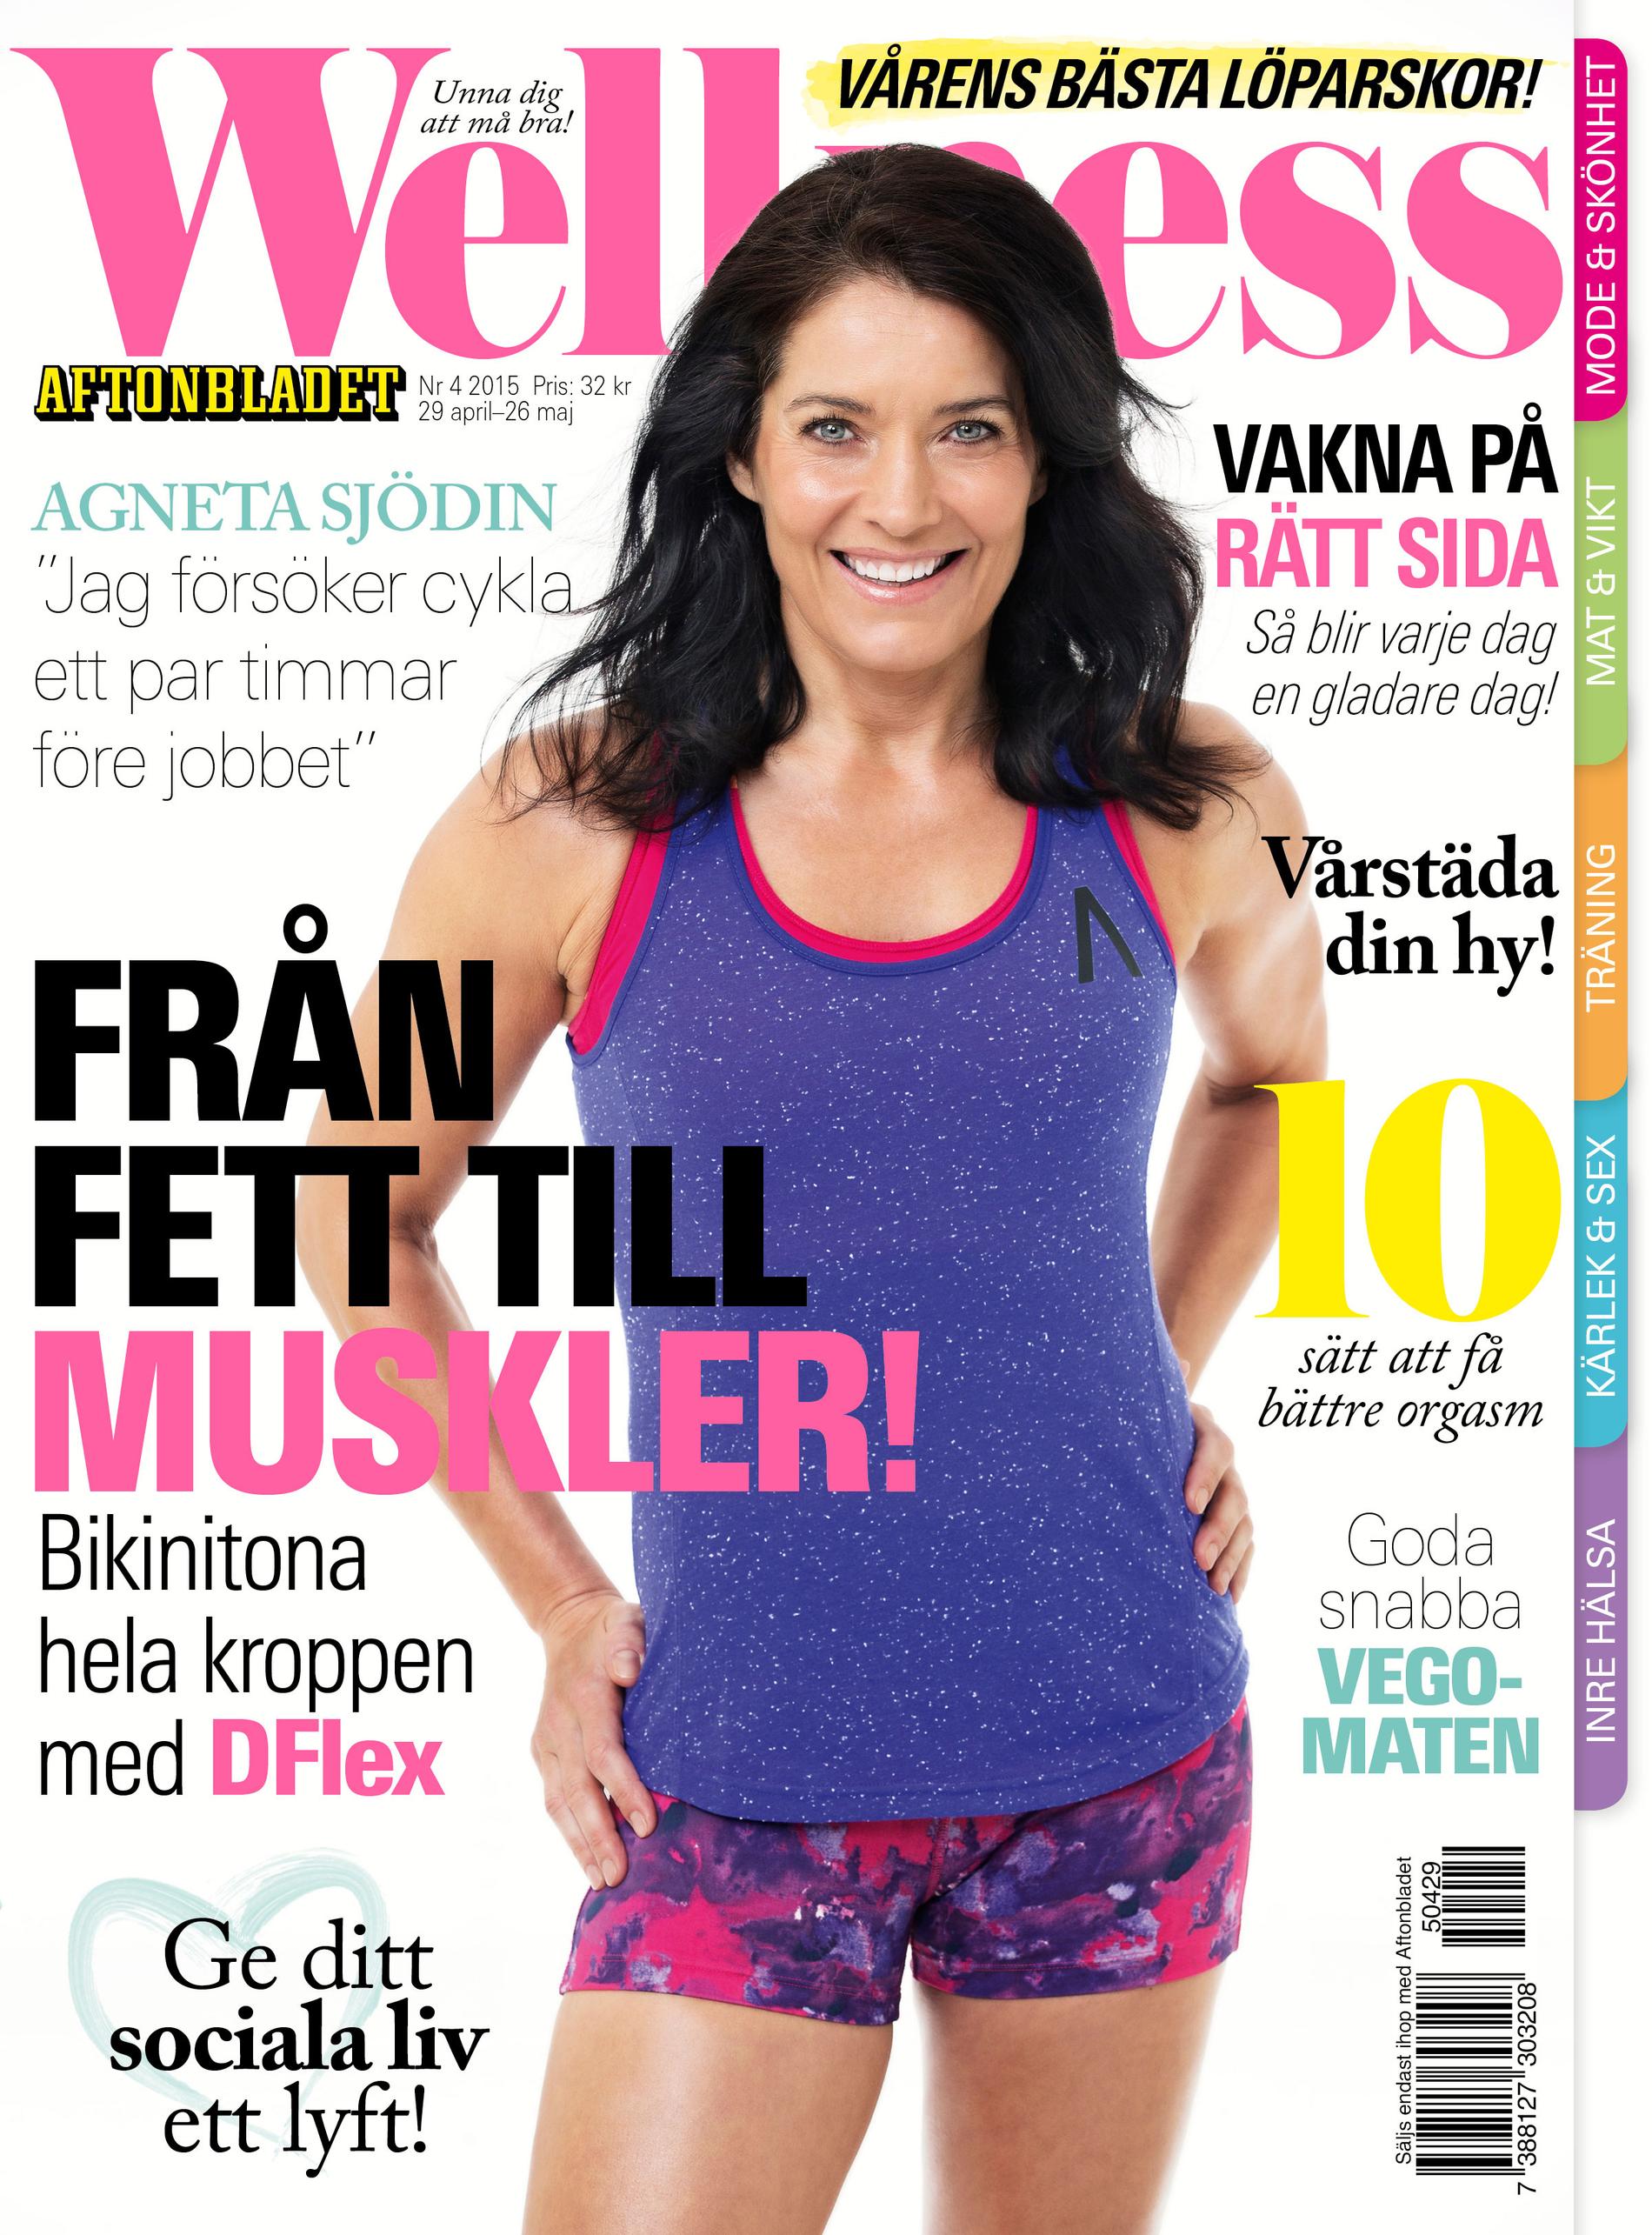 När intervjun med Agneta Sjödin i Wellness nr 4/2015 skickades till tryck hade olyckan inte skett. Wellness önskar henne all lycka till med rehabiliteringen.